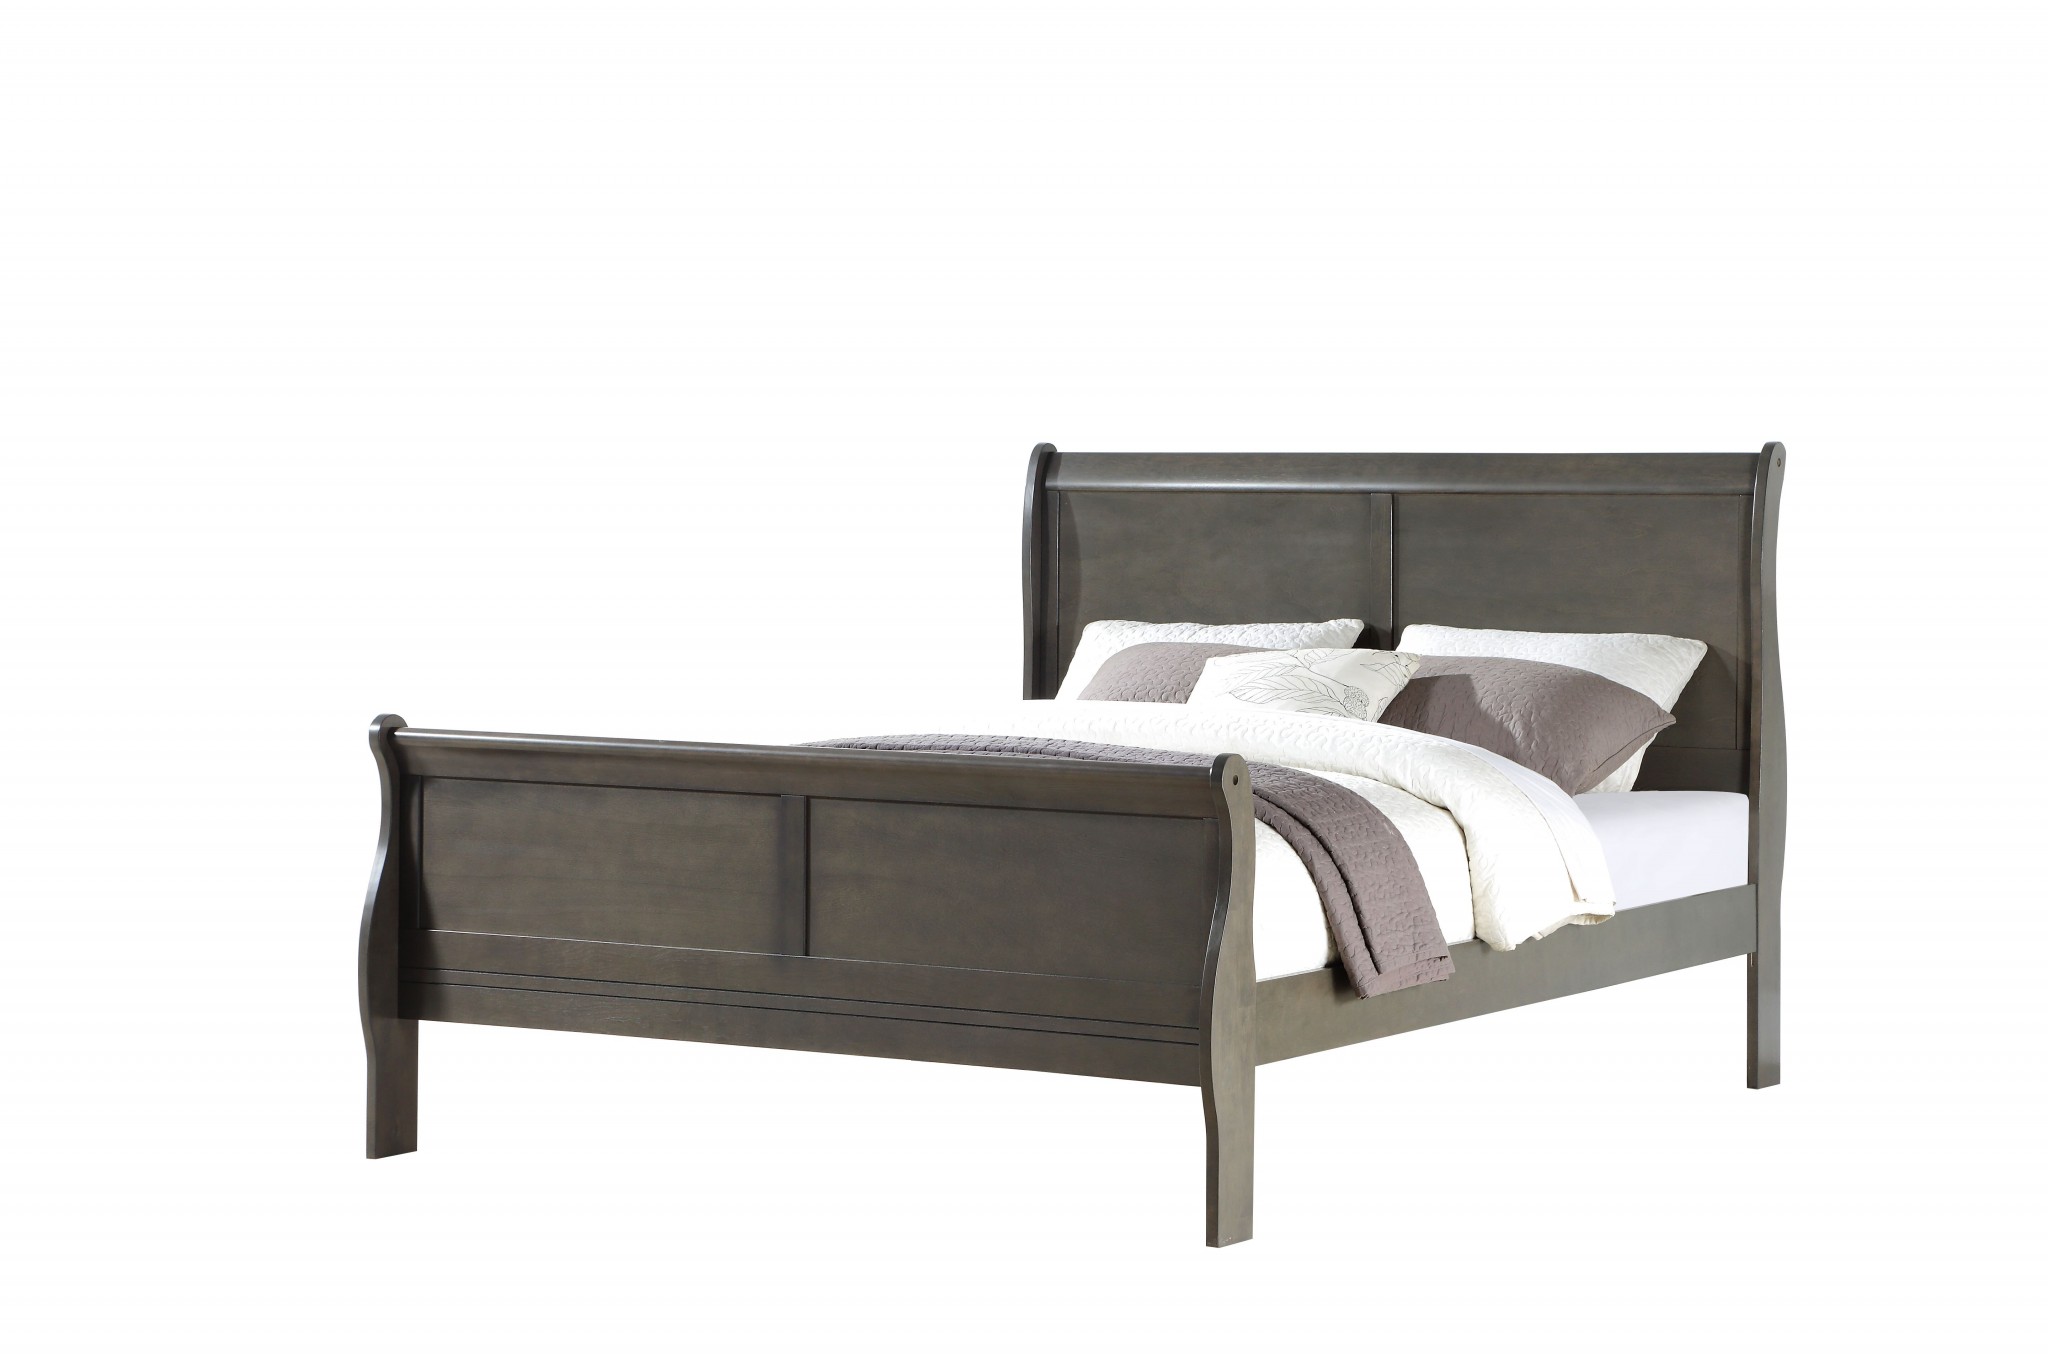 62" X 90" X 47" Dark Gray Wood Queen Bed